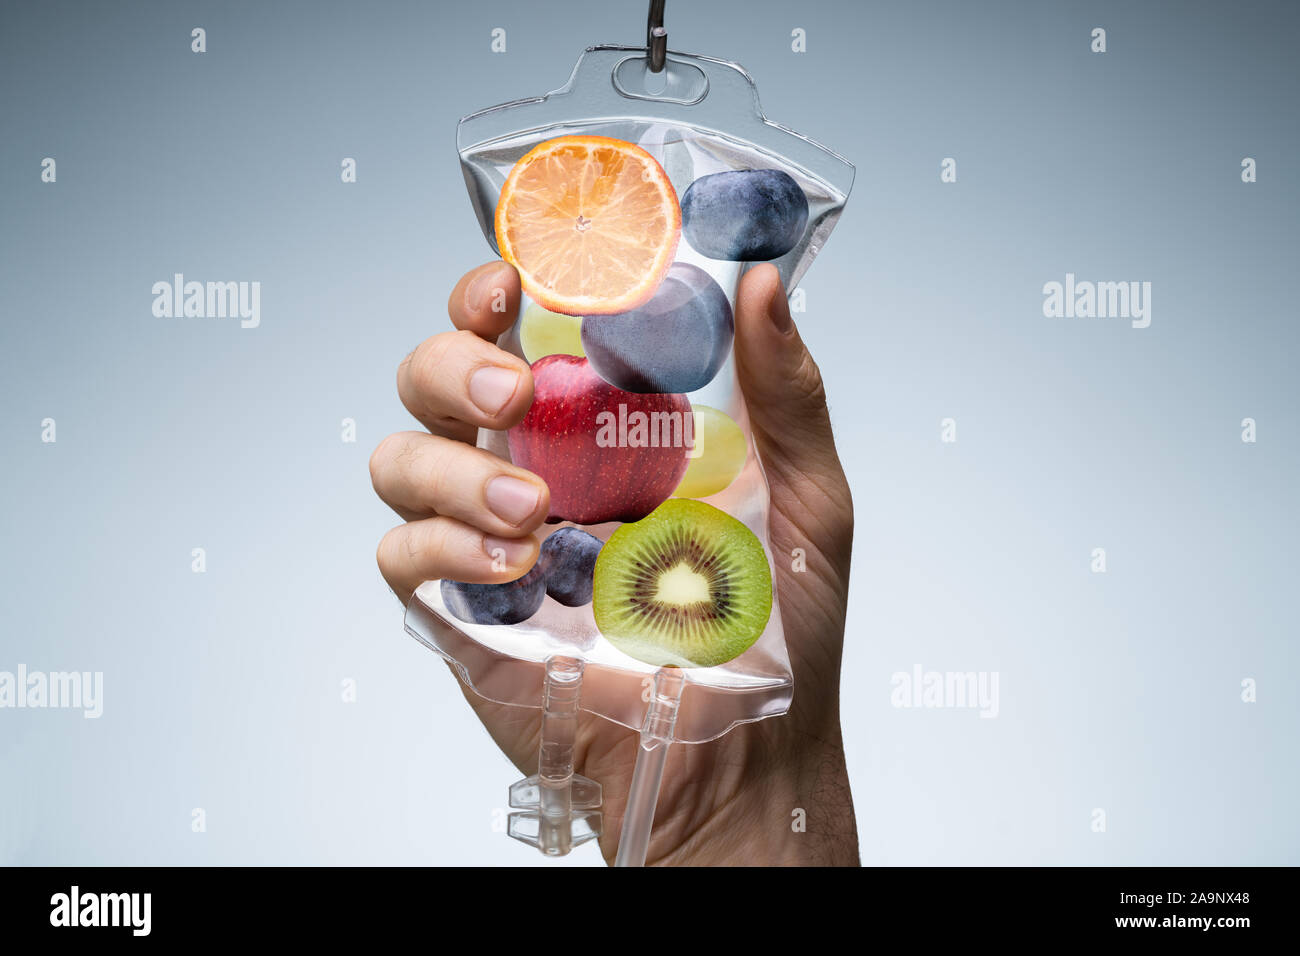 Person's Hand Holding sac rempli de solution saline différentes tranches de fruits contre fond gris Banque D'Images